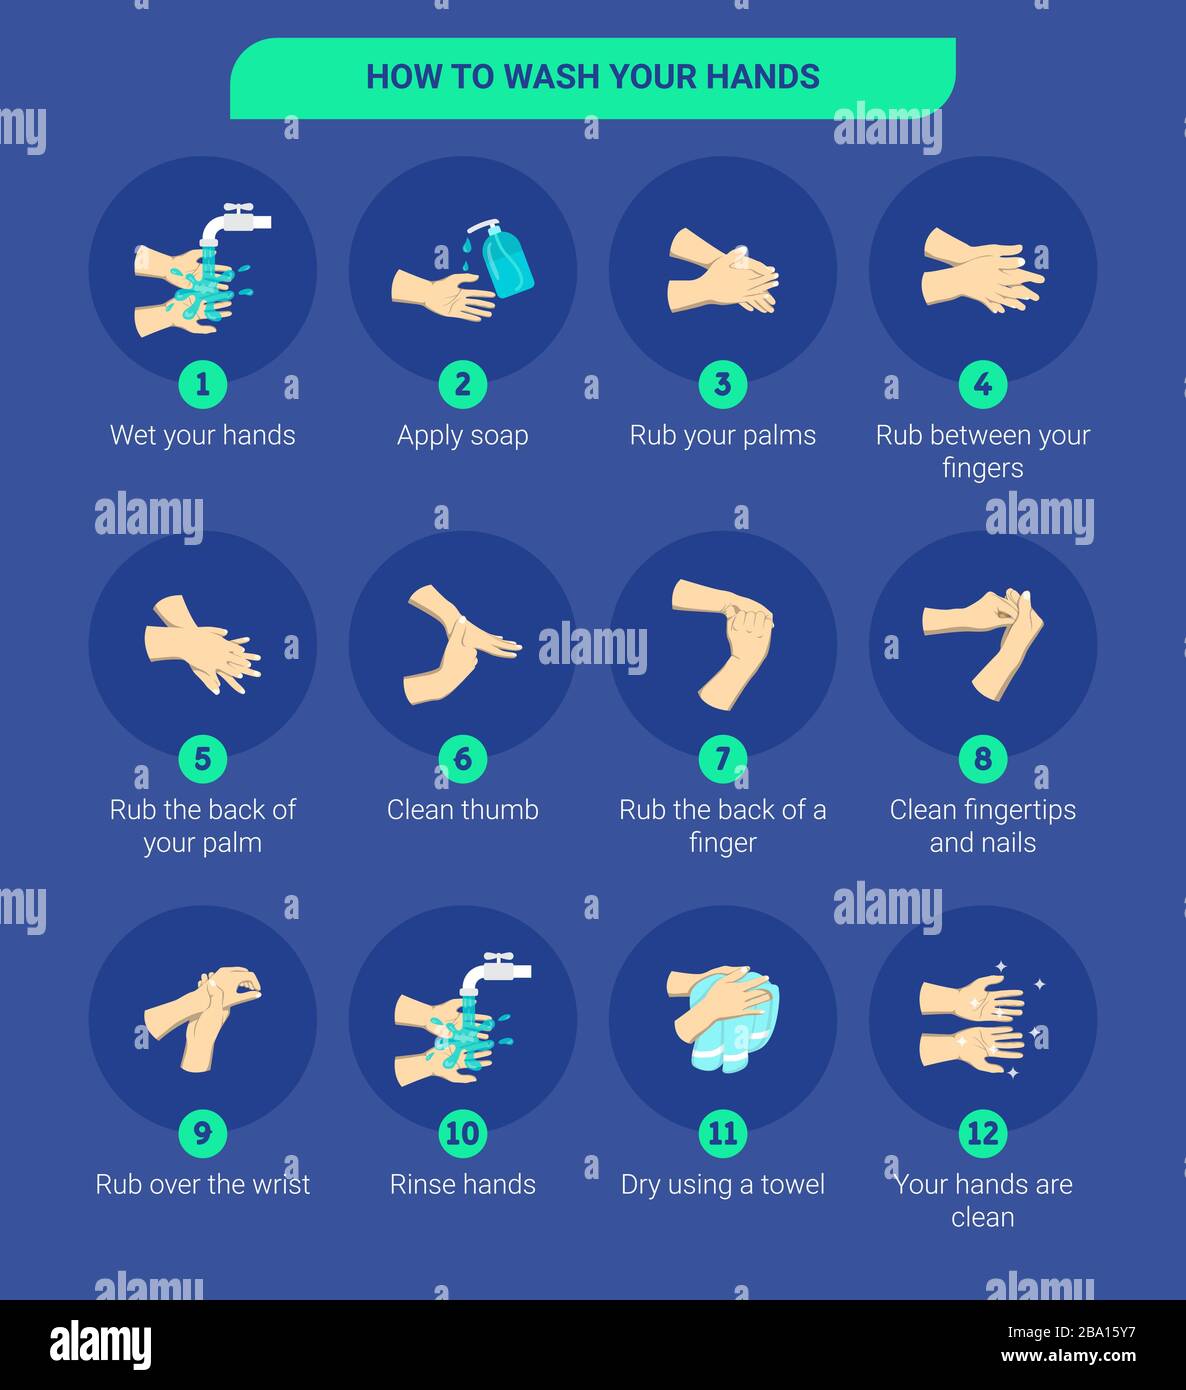 Illustrazione infografica dettagliata di come lavare le mani. Illustrazione infografica di come lavare le mani con acqua e sapone. Illustrazione Vettoriale